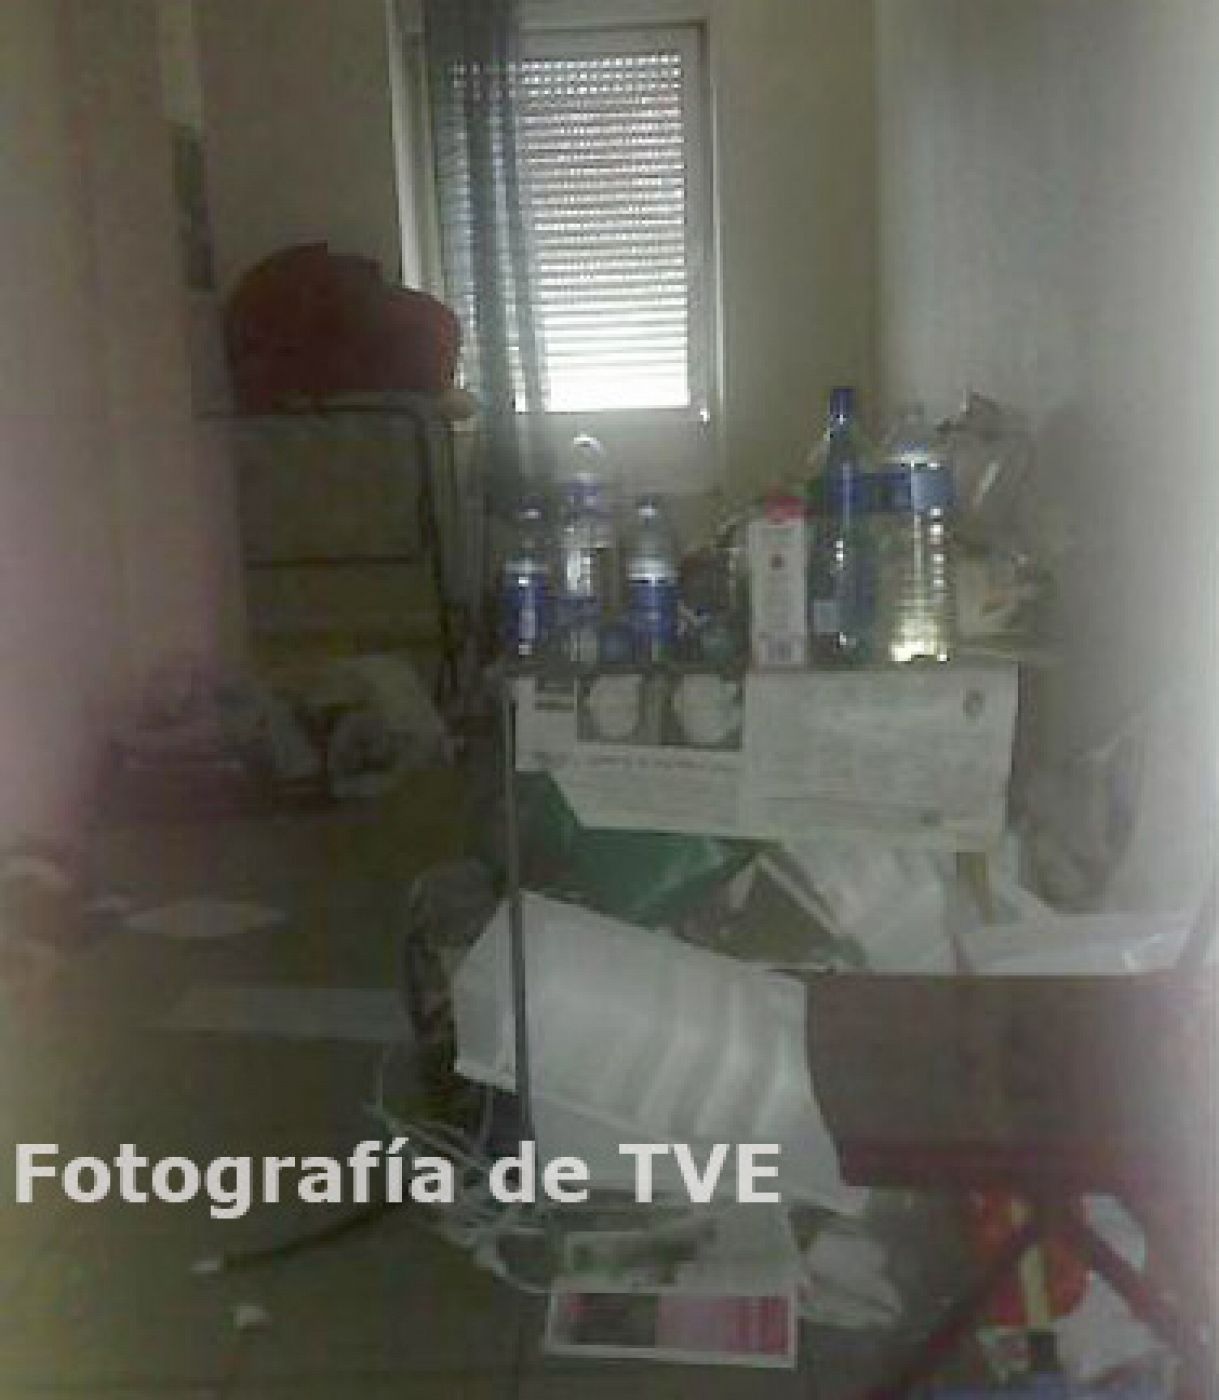 Primera imagen obtenida en exclusiva por TVE del interior del piso de ETA en Burdeos.